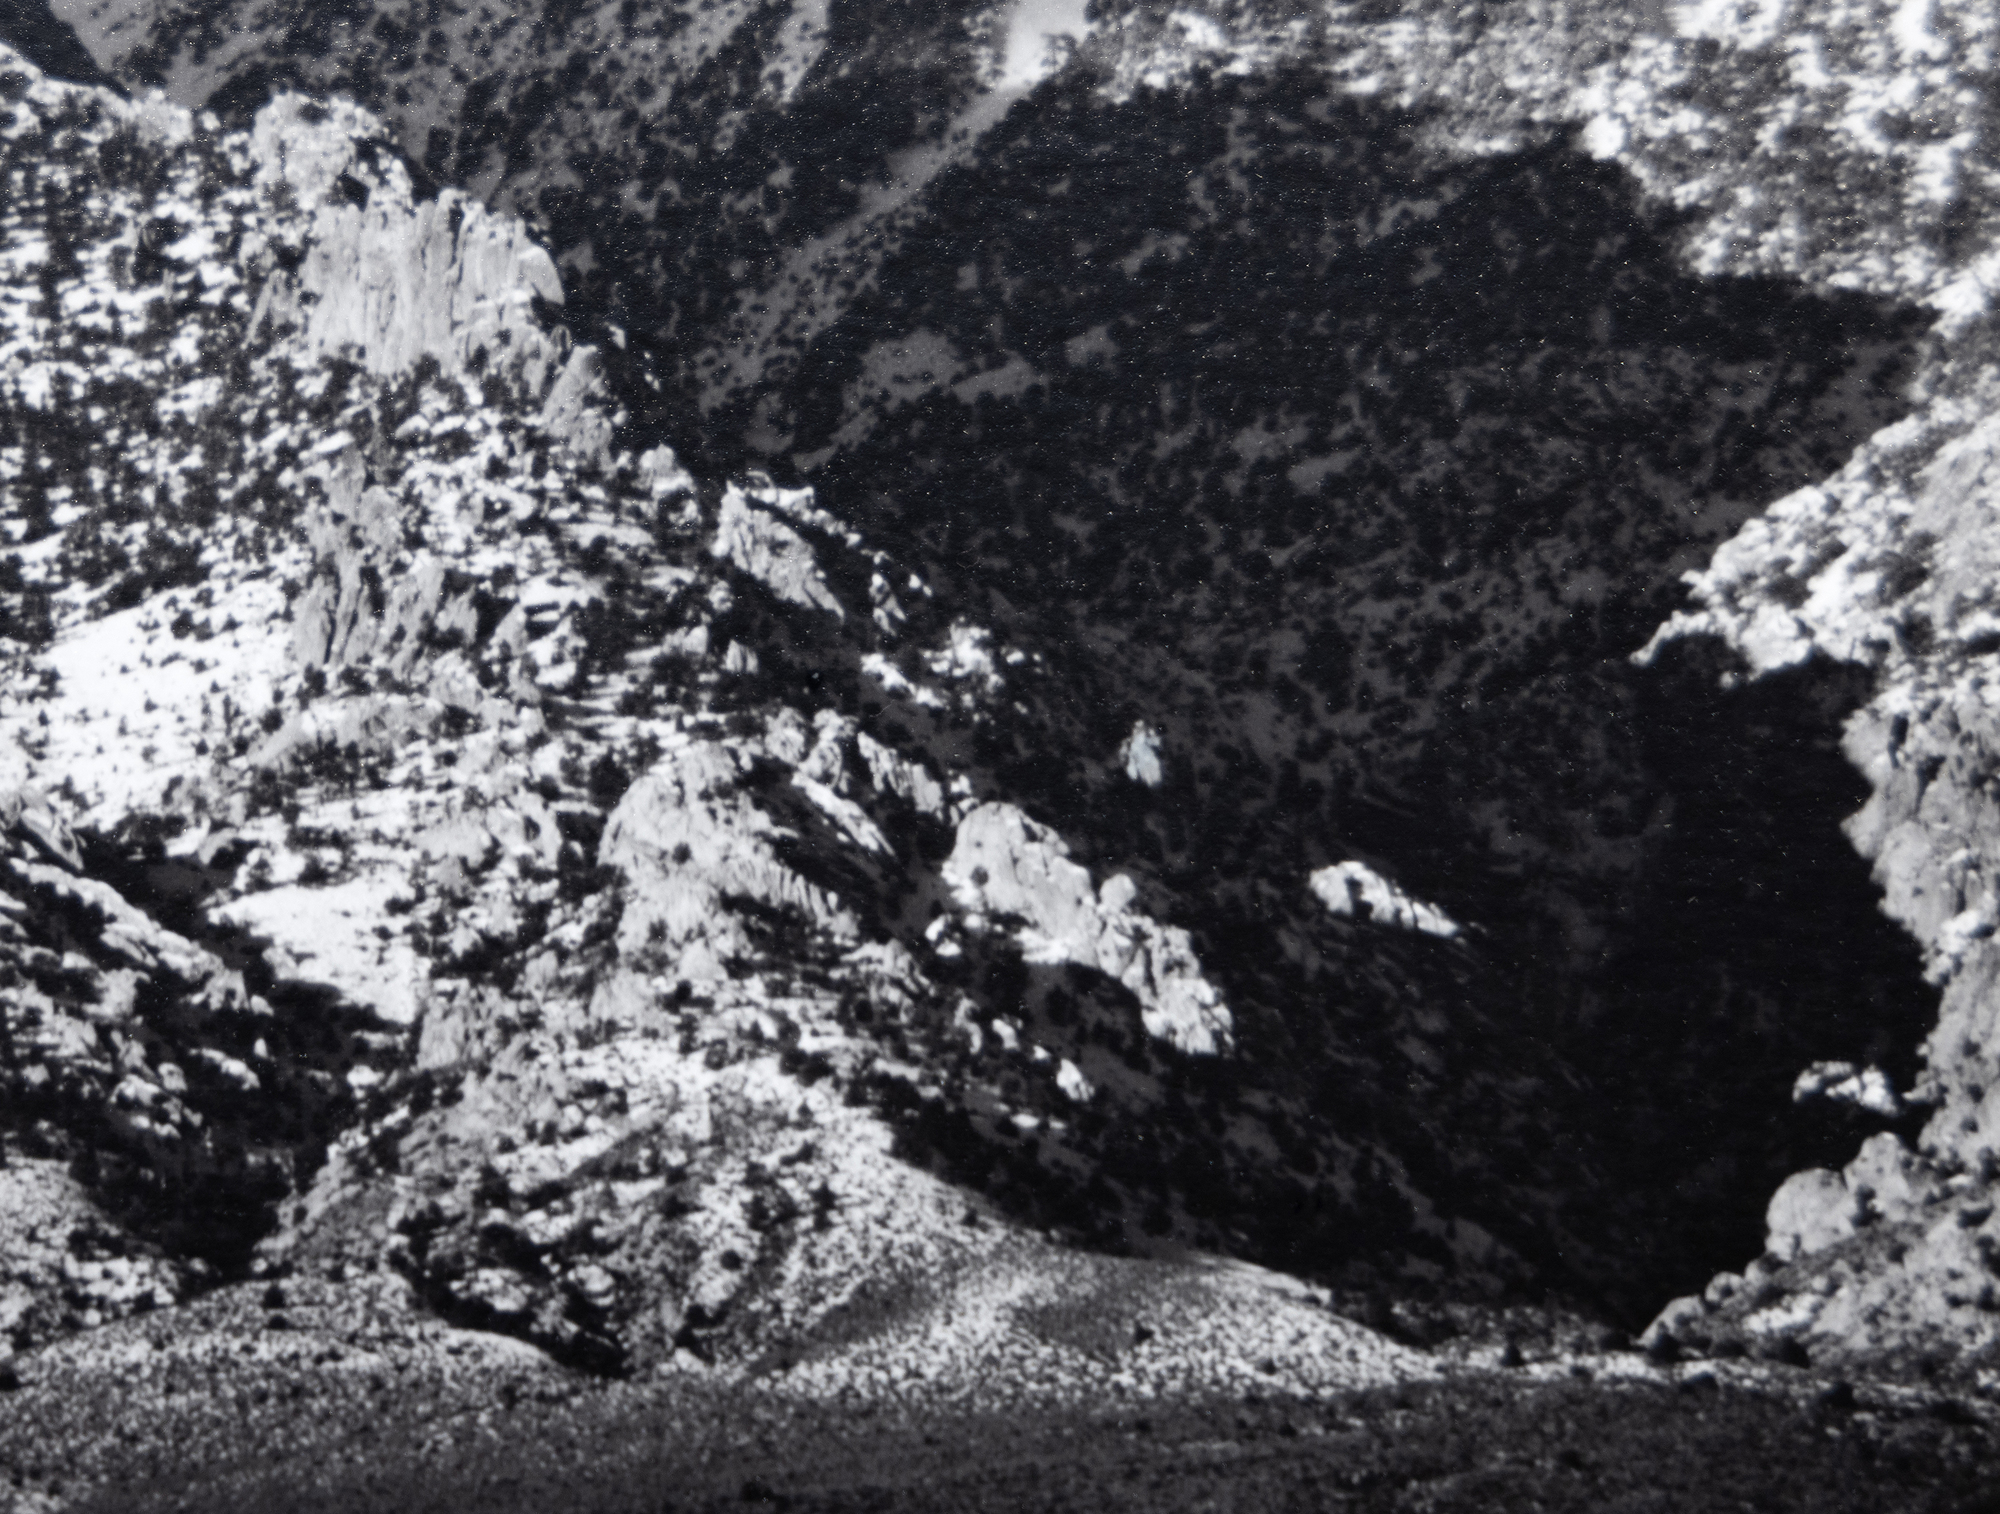 L&#039;exploration par Ansel Adams de la vallée d&#039;Owens et les vues de l&#039;imposant versant oriental des montagnes de la Sierra Nevada revêtent une importance considérable. Elles font partie des photographies les plus emblématiques qui ont permis à Adams de capturer la majesté de la Sierra Nevada tout en donnant une impression saisissante de la profondeur et de l&#039;étendue du fond de la vallée aride. Le mont Williamson, dans la Sierra Nevada, depuis la vallée d&#039;Owens, a probablement été photographié en 1944, peu après l&#039;introduction du système de zones qui permettait une large gamme de tons et une exposition équilibrée avec une clarté dans les hautes lumières et les ombres. Le présent exemplaire, imprimé en août 1978, fait partie de la collection de nombreux musées, mais parmi les collectionneurs, il figure parmi les tirages les plus rares d&#039;Ansel Adams.